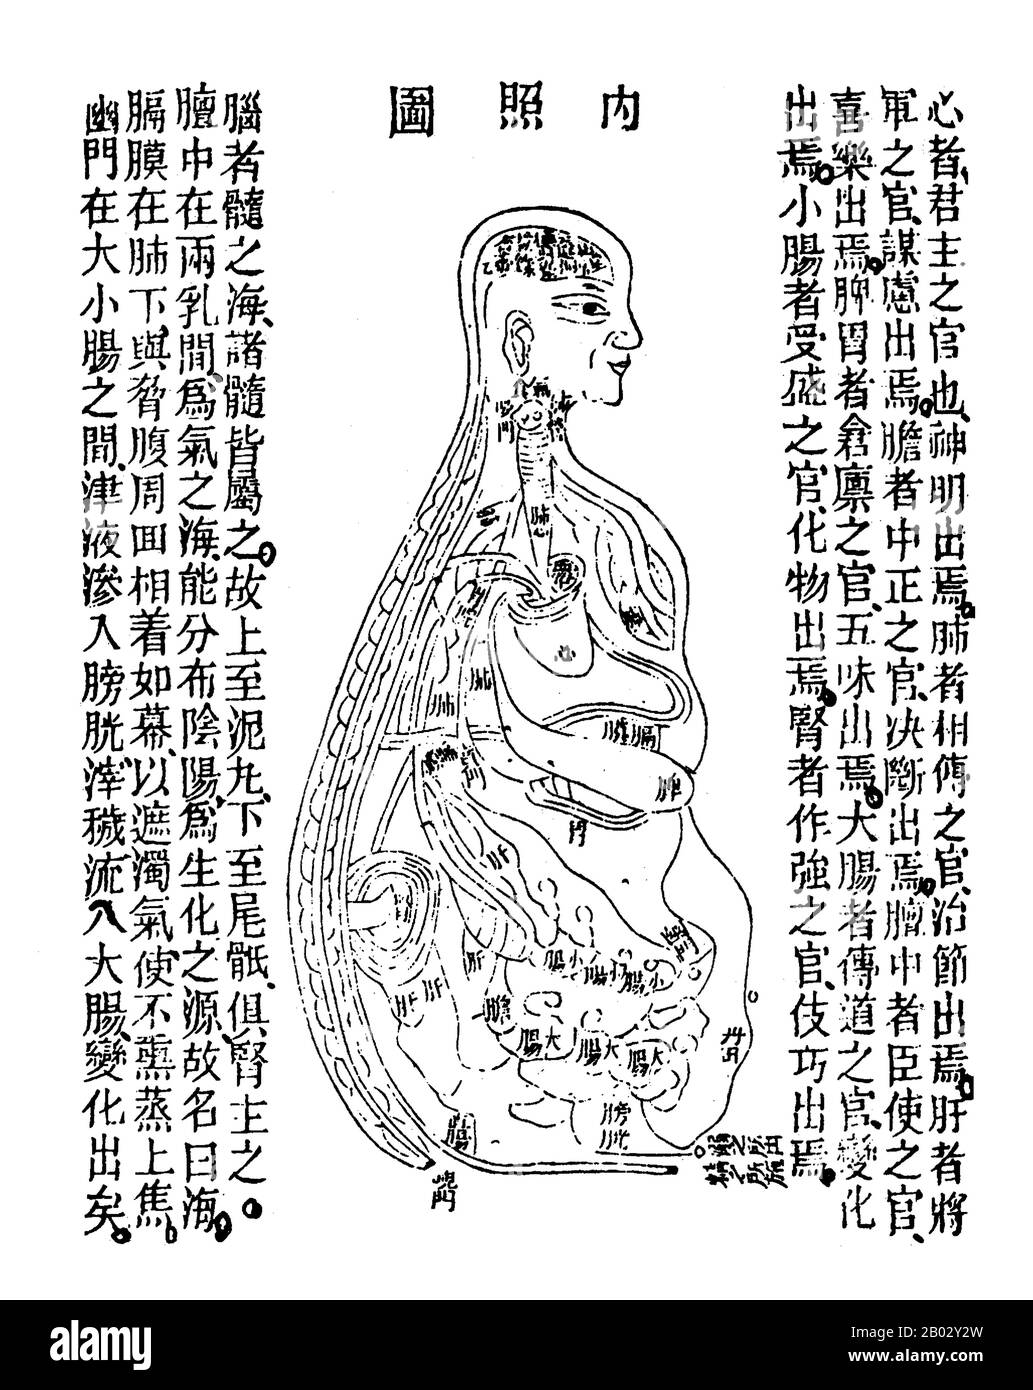 Qigong, qi gong, chi kung, o chi gung, literalmente 'Cultivo de energía de  la vida') es un sistema holístico de postura y movimiento corporal  coordinados, respiración y meditación utilizado para la salud,